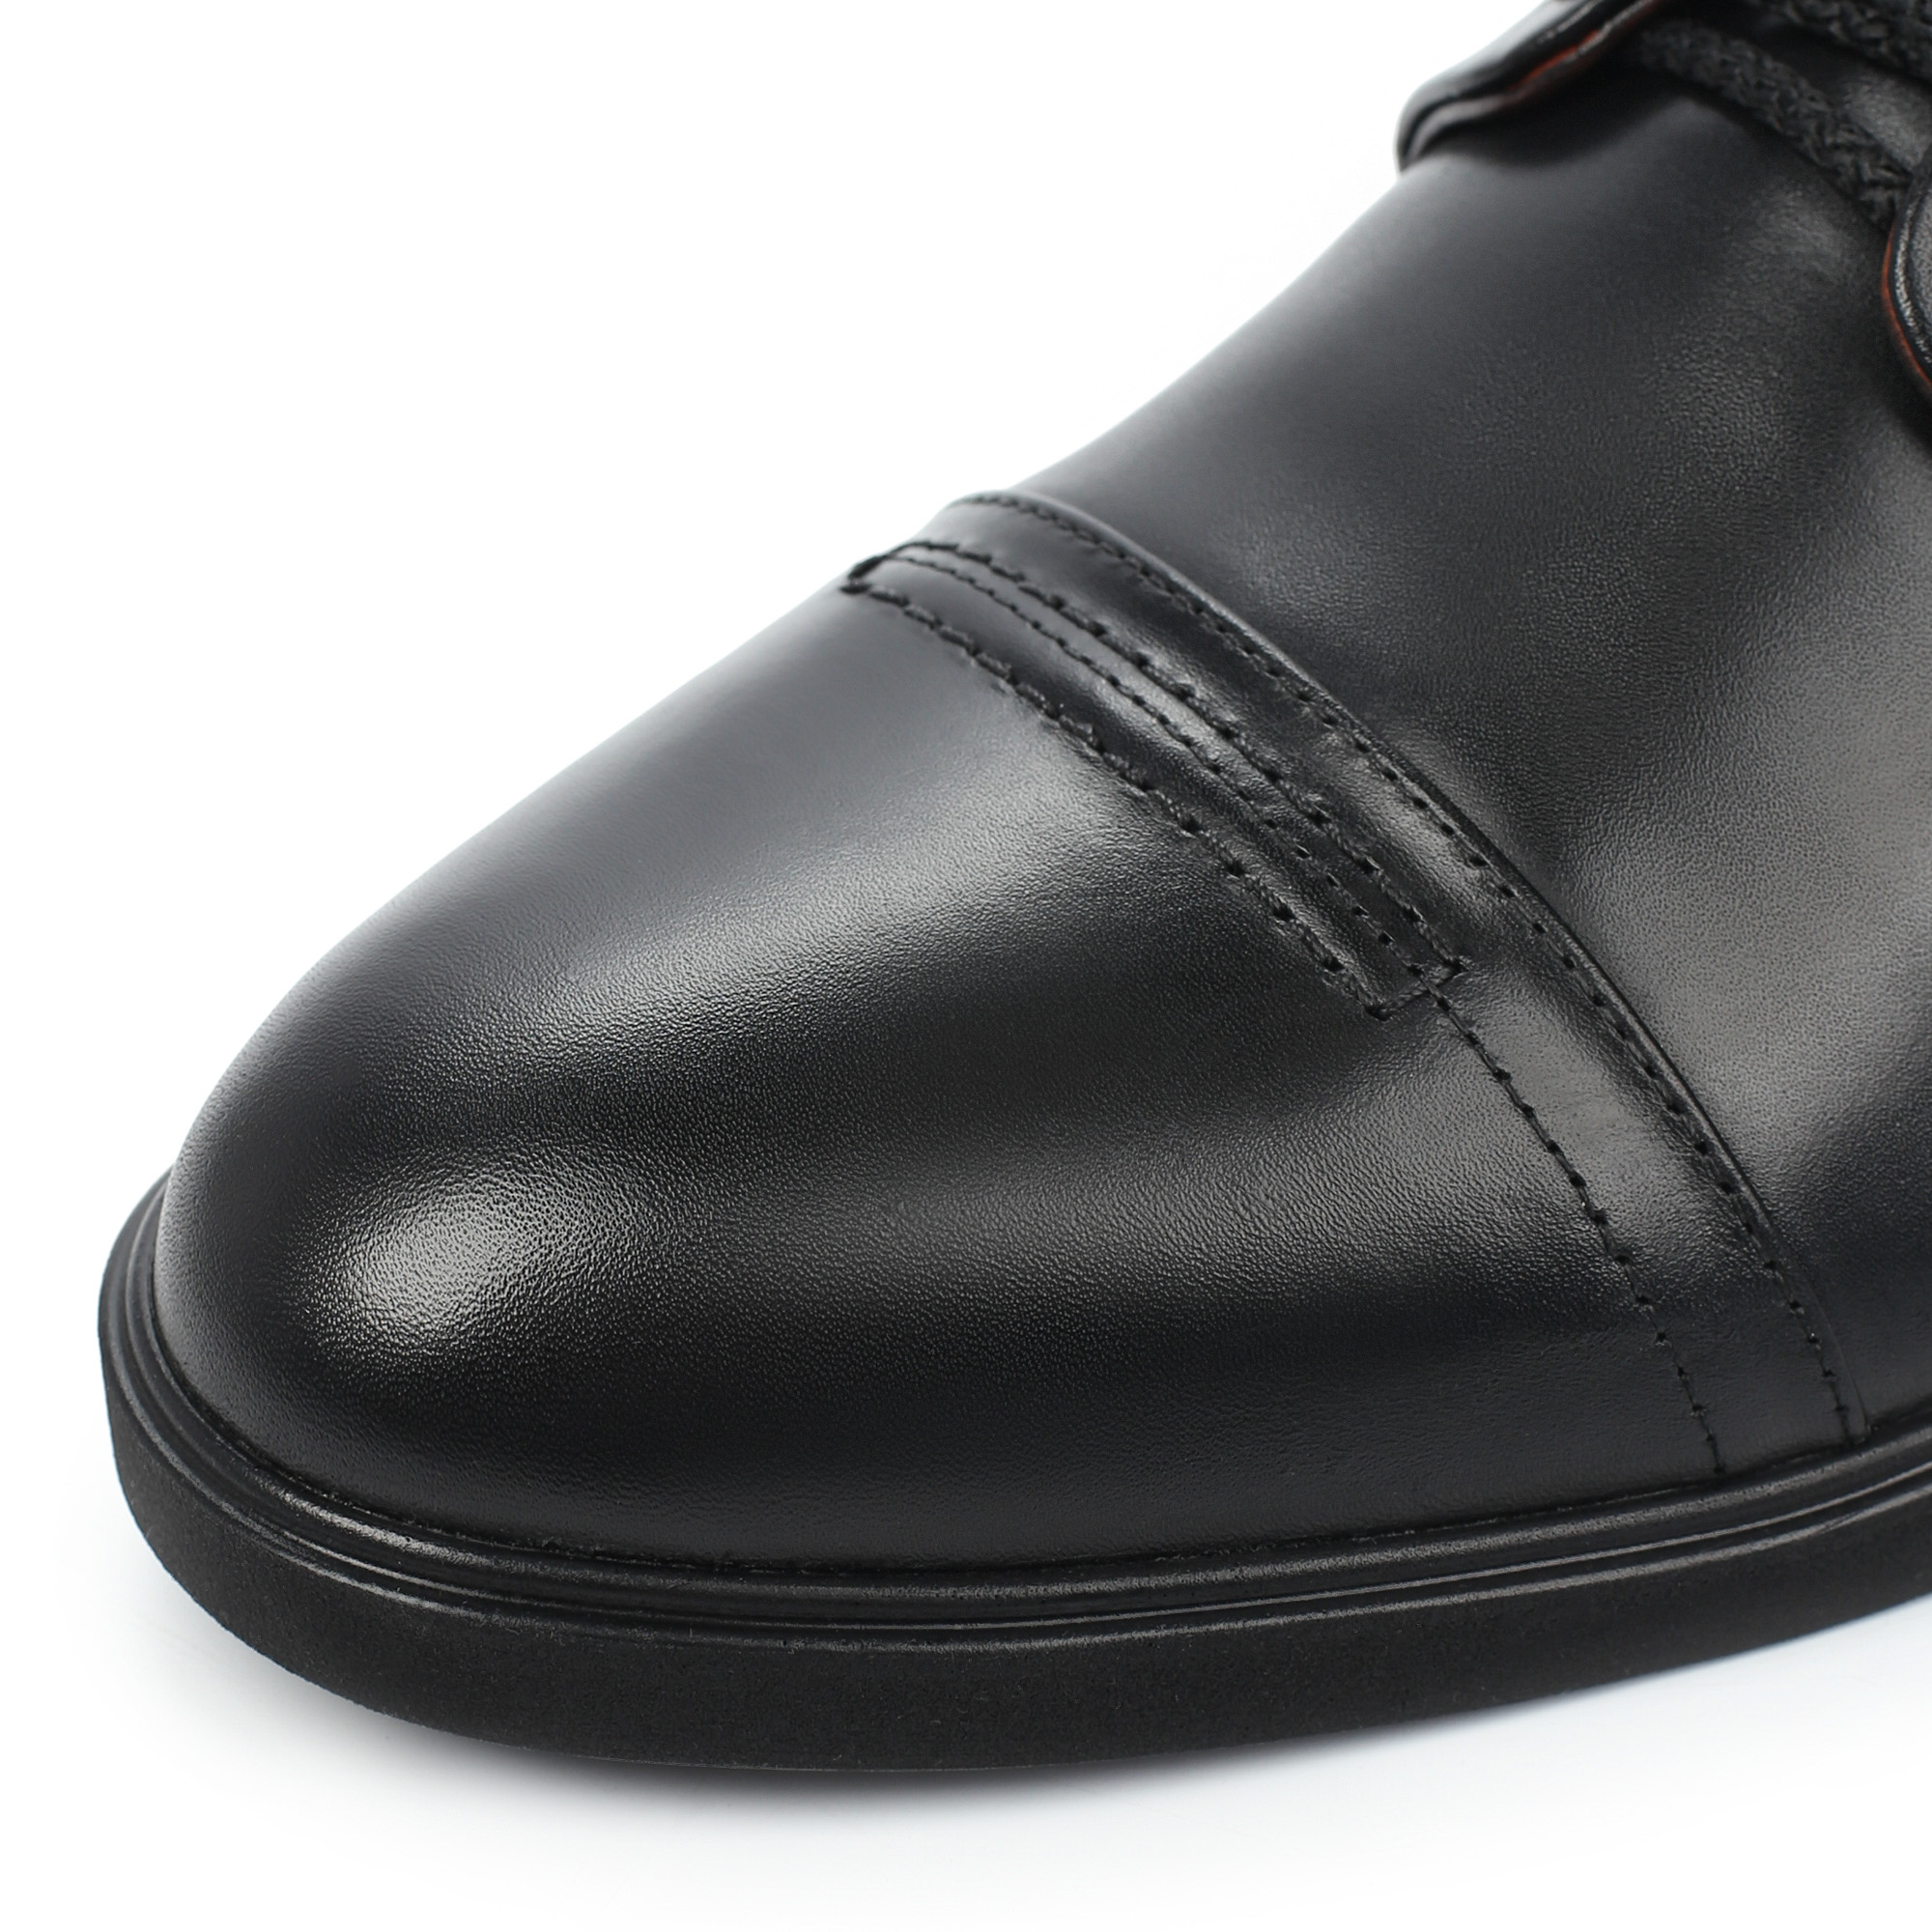 Туфли/полуботинки Thomas Munz 306-013A-1102, цвет черный, размер 42 - фото 6